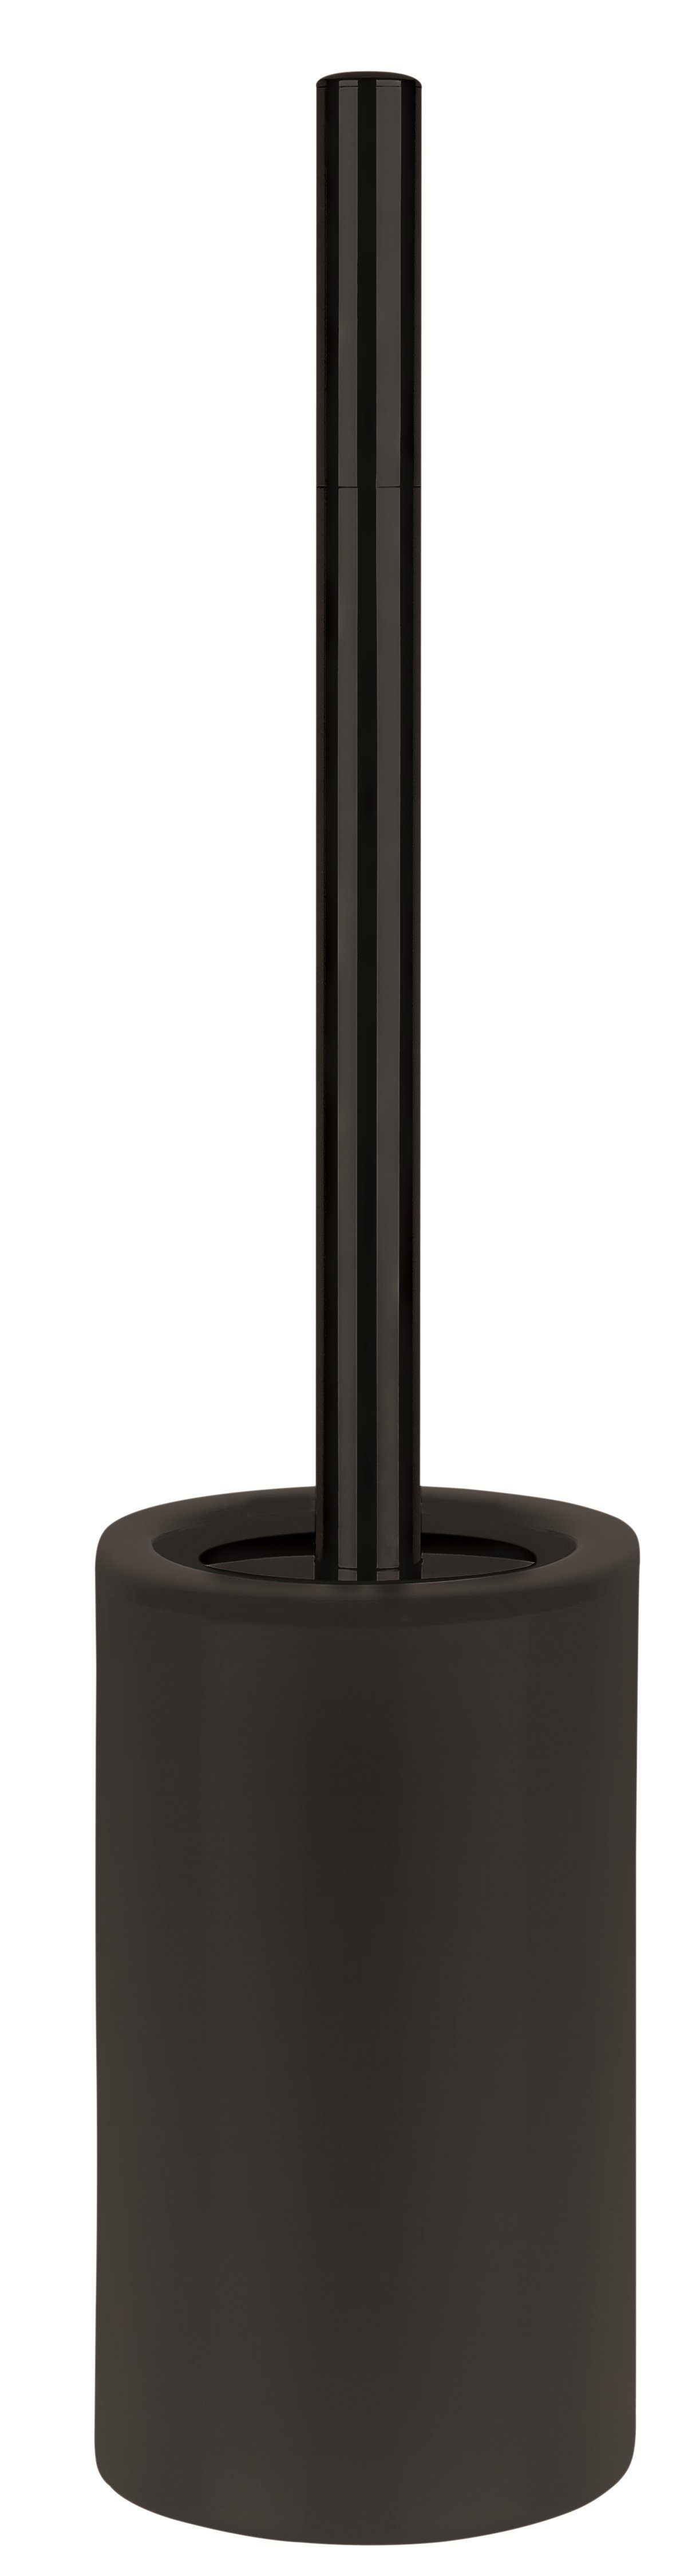 zu TUBE-MATT Keramik, elegante aus Serie TUBE-MATT, anderen Bad-Accessoires spirella hochwertiger Toilettenbürste Matt-Optik, der Toilettenpapierhalter Passend WC-Bürste schwarz,